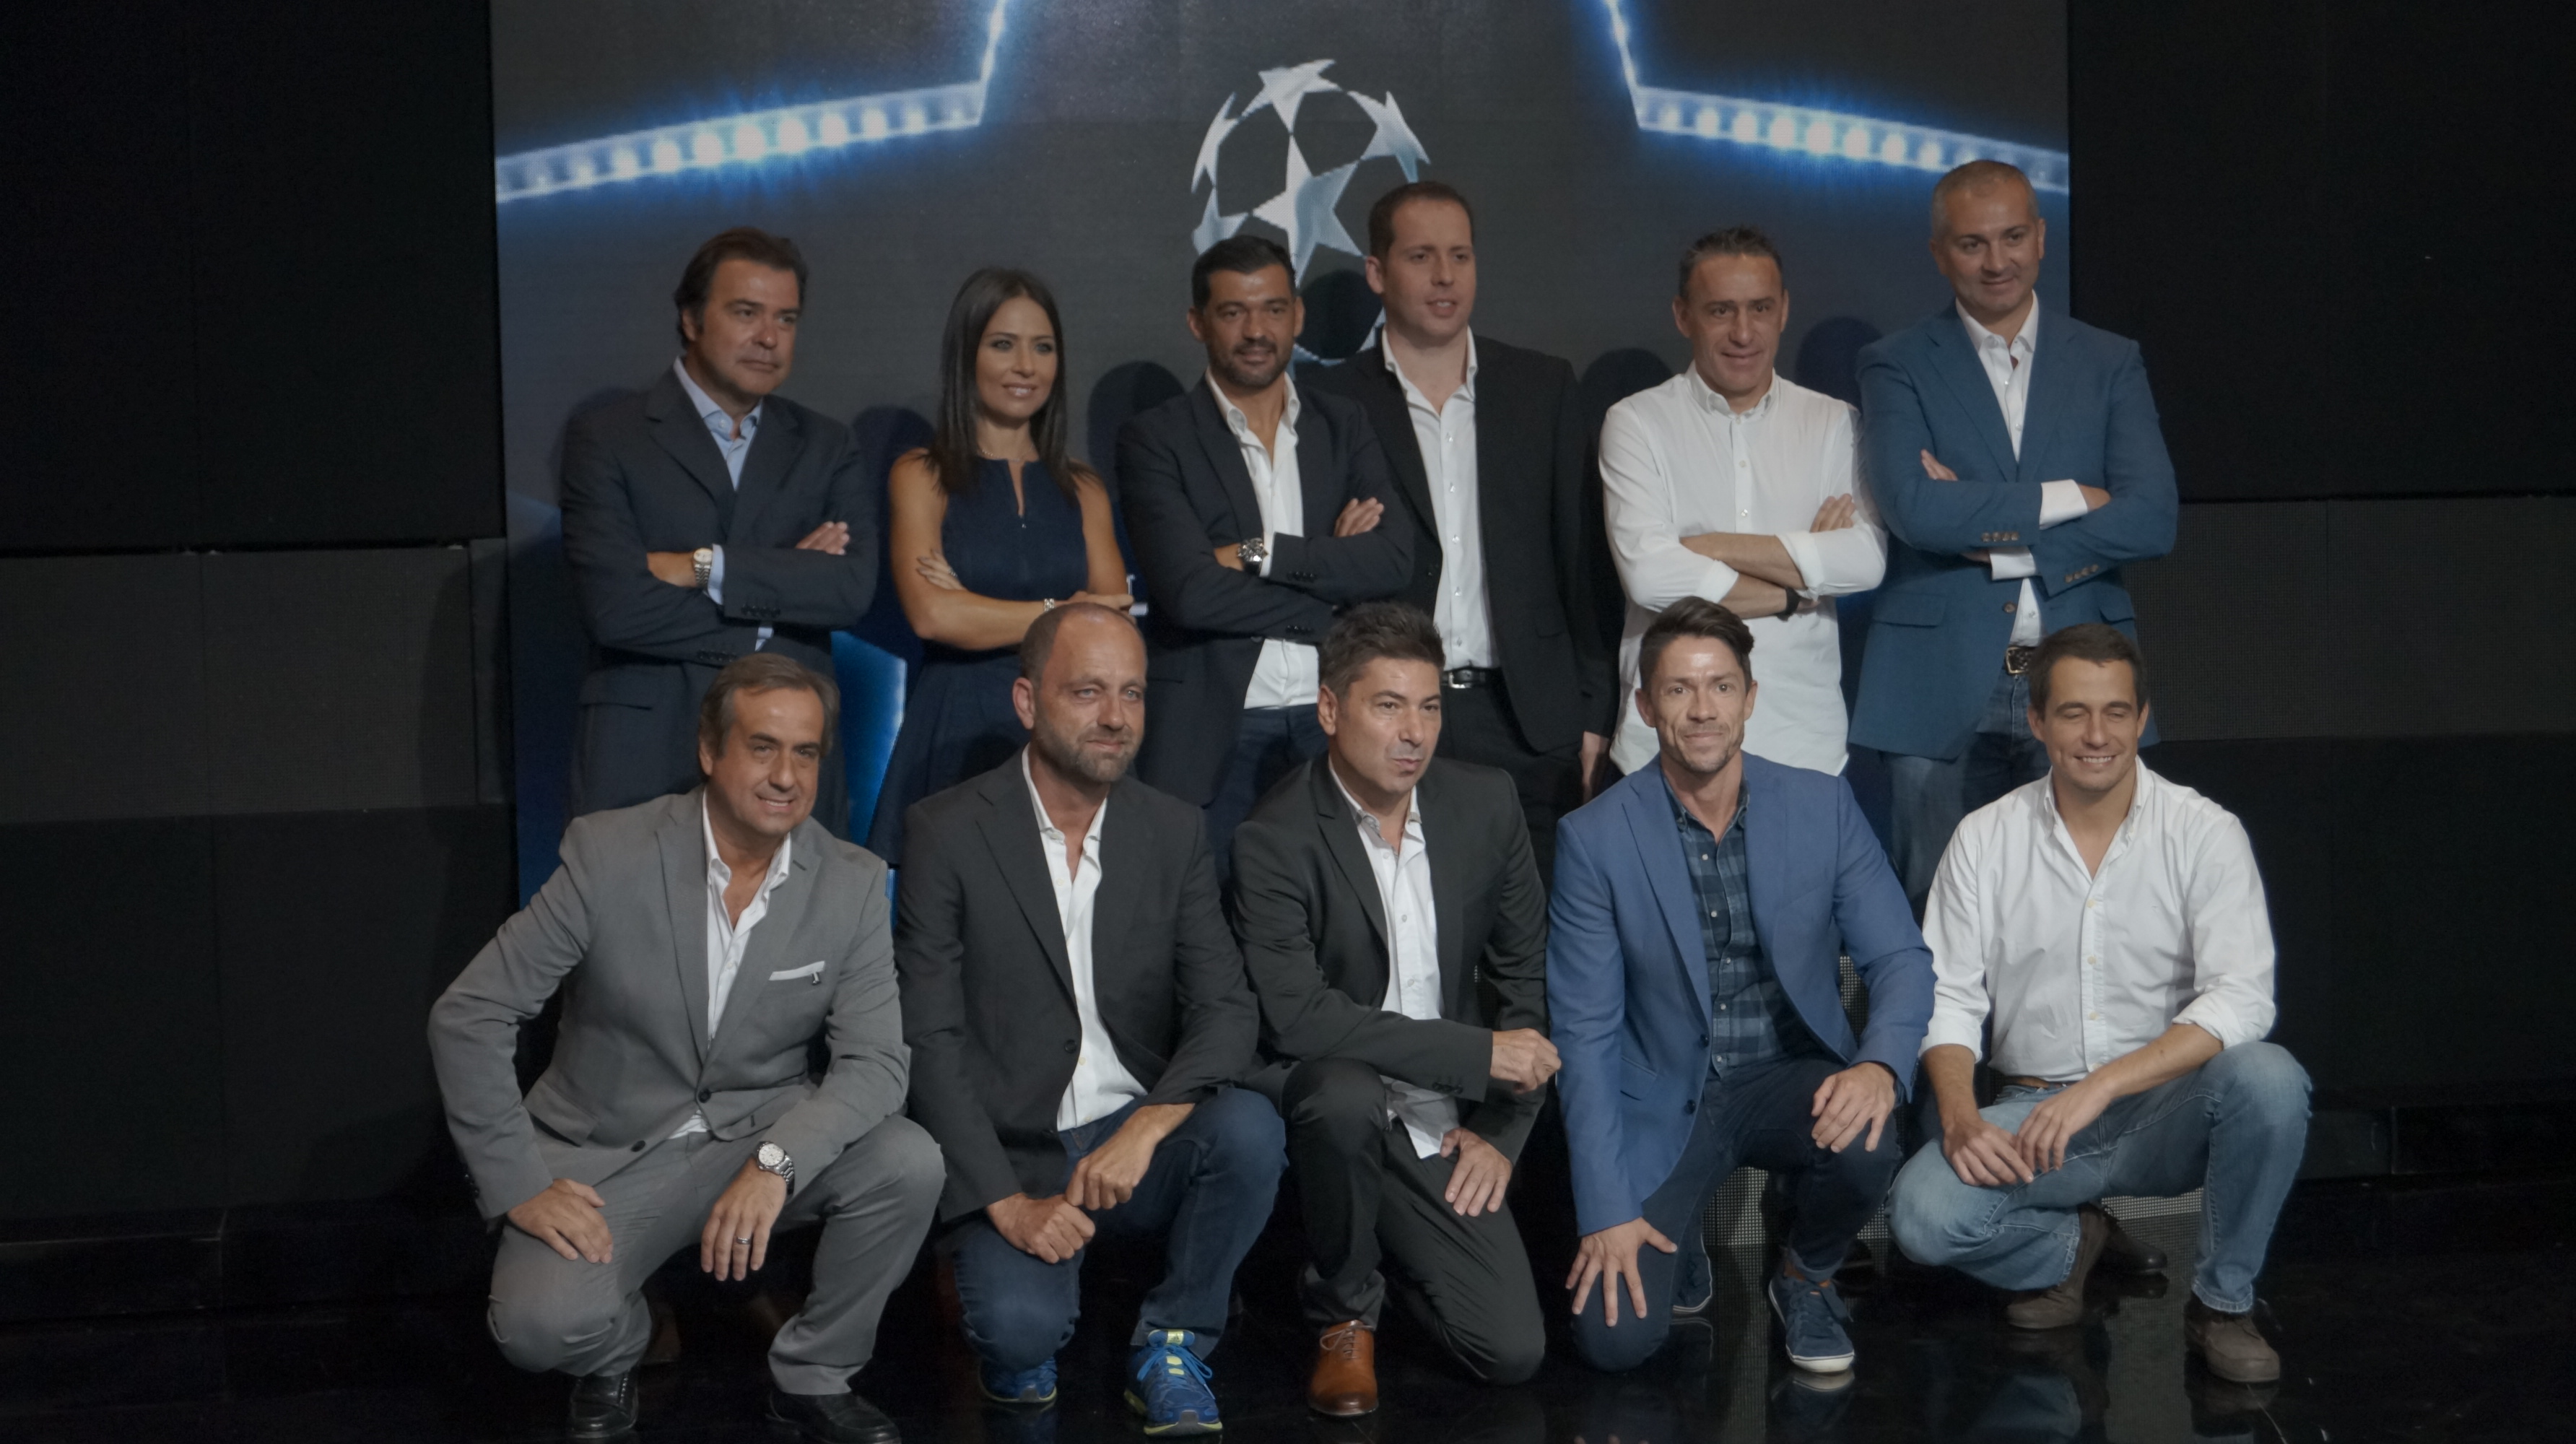 Liga dos Campeões regressa à RTP | Extra | RTP